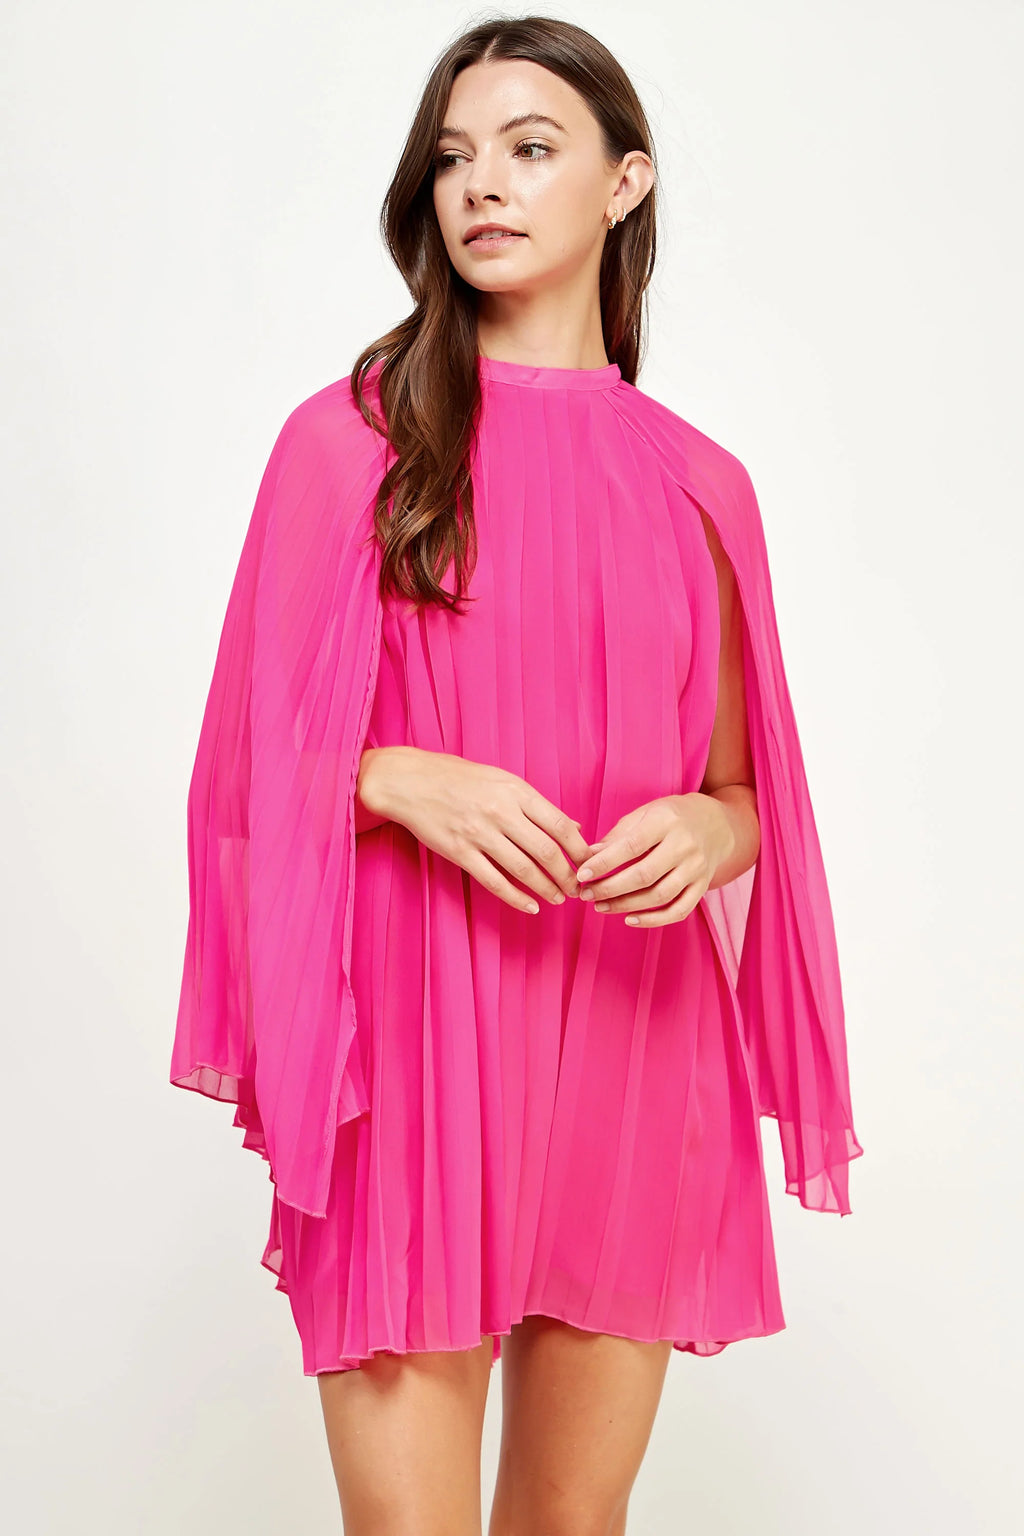 Pink chiffon mini dress